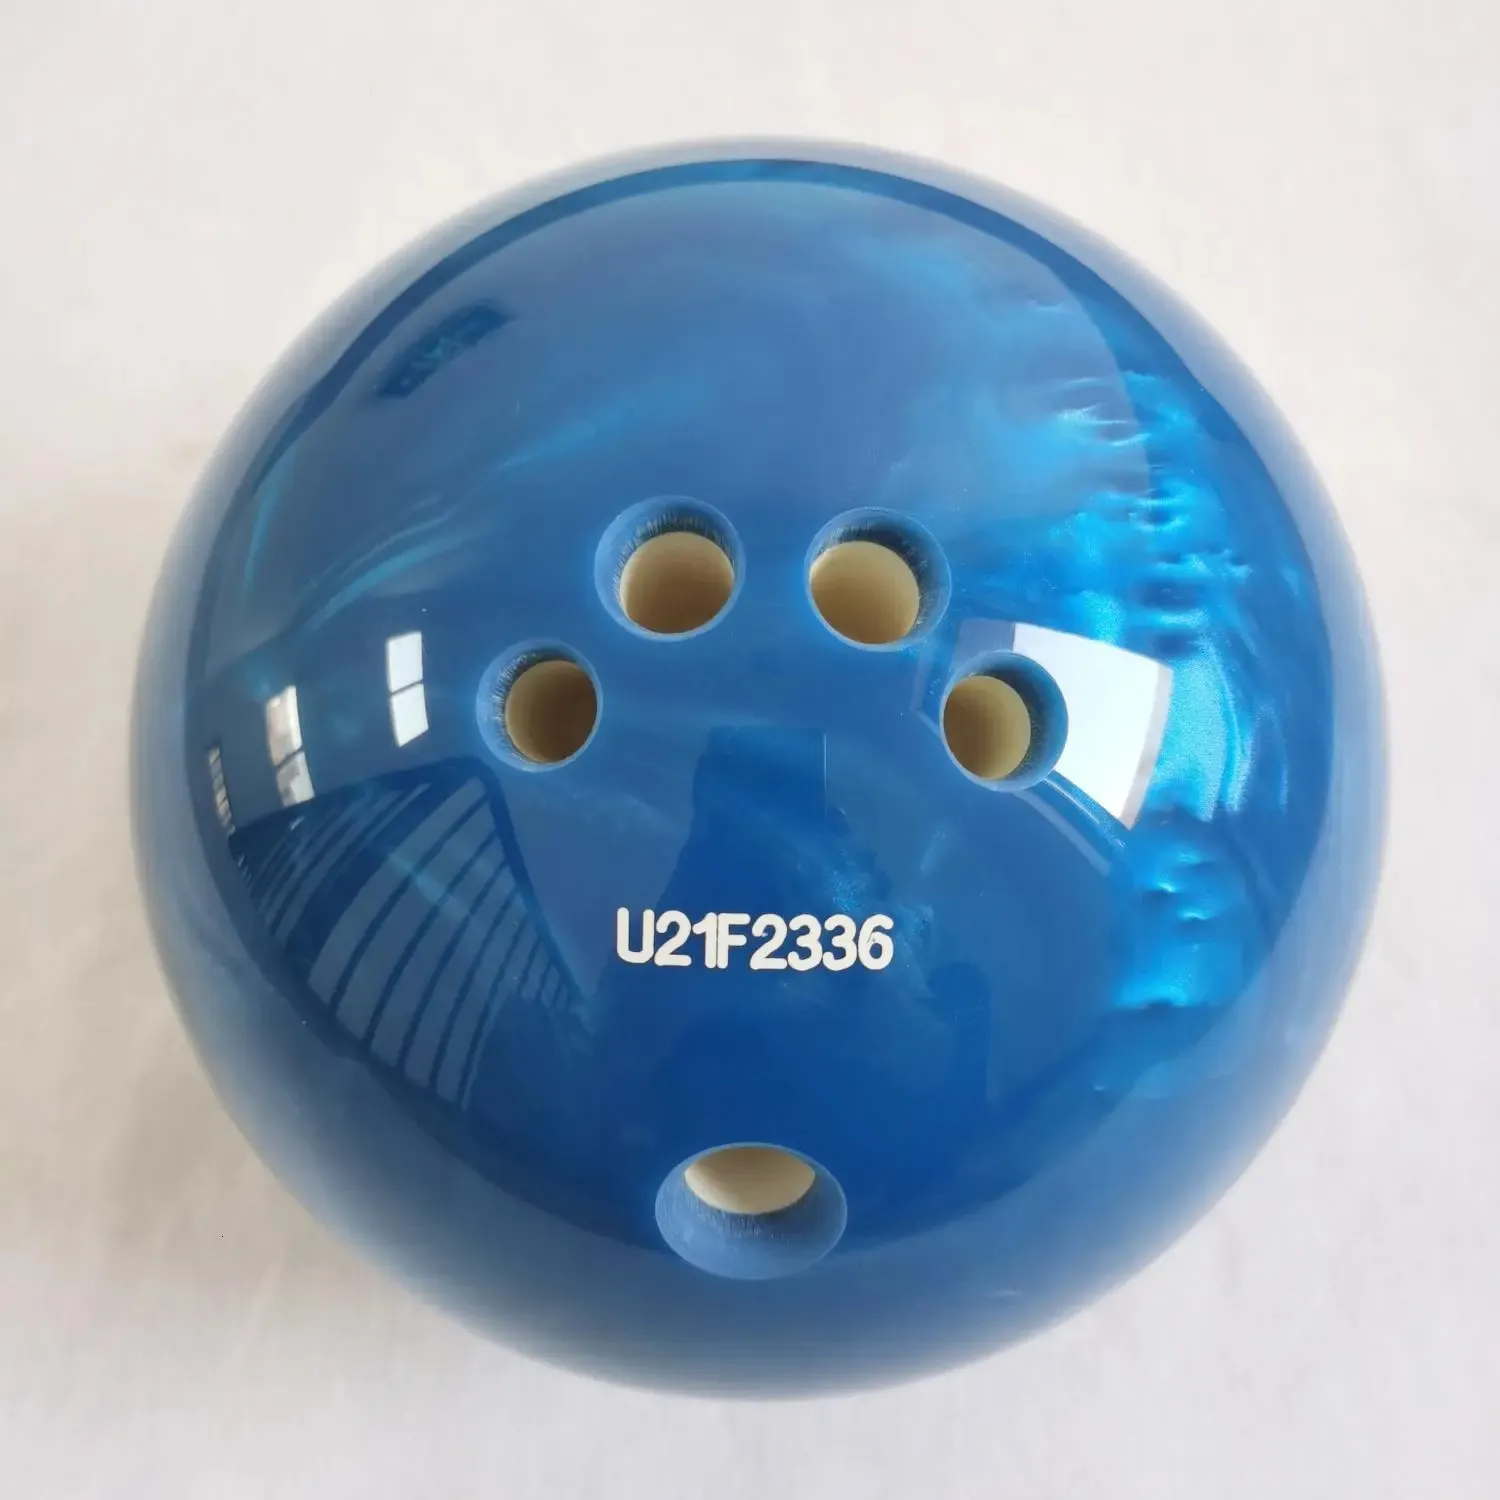 Bowling 5 pound bowling ball 231009